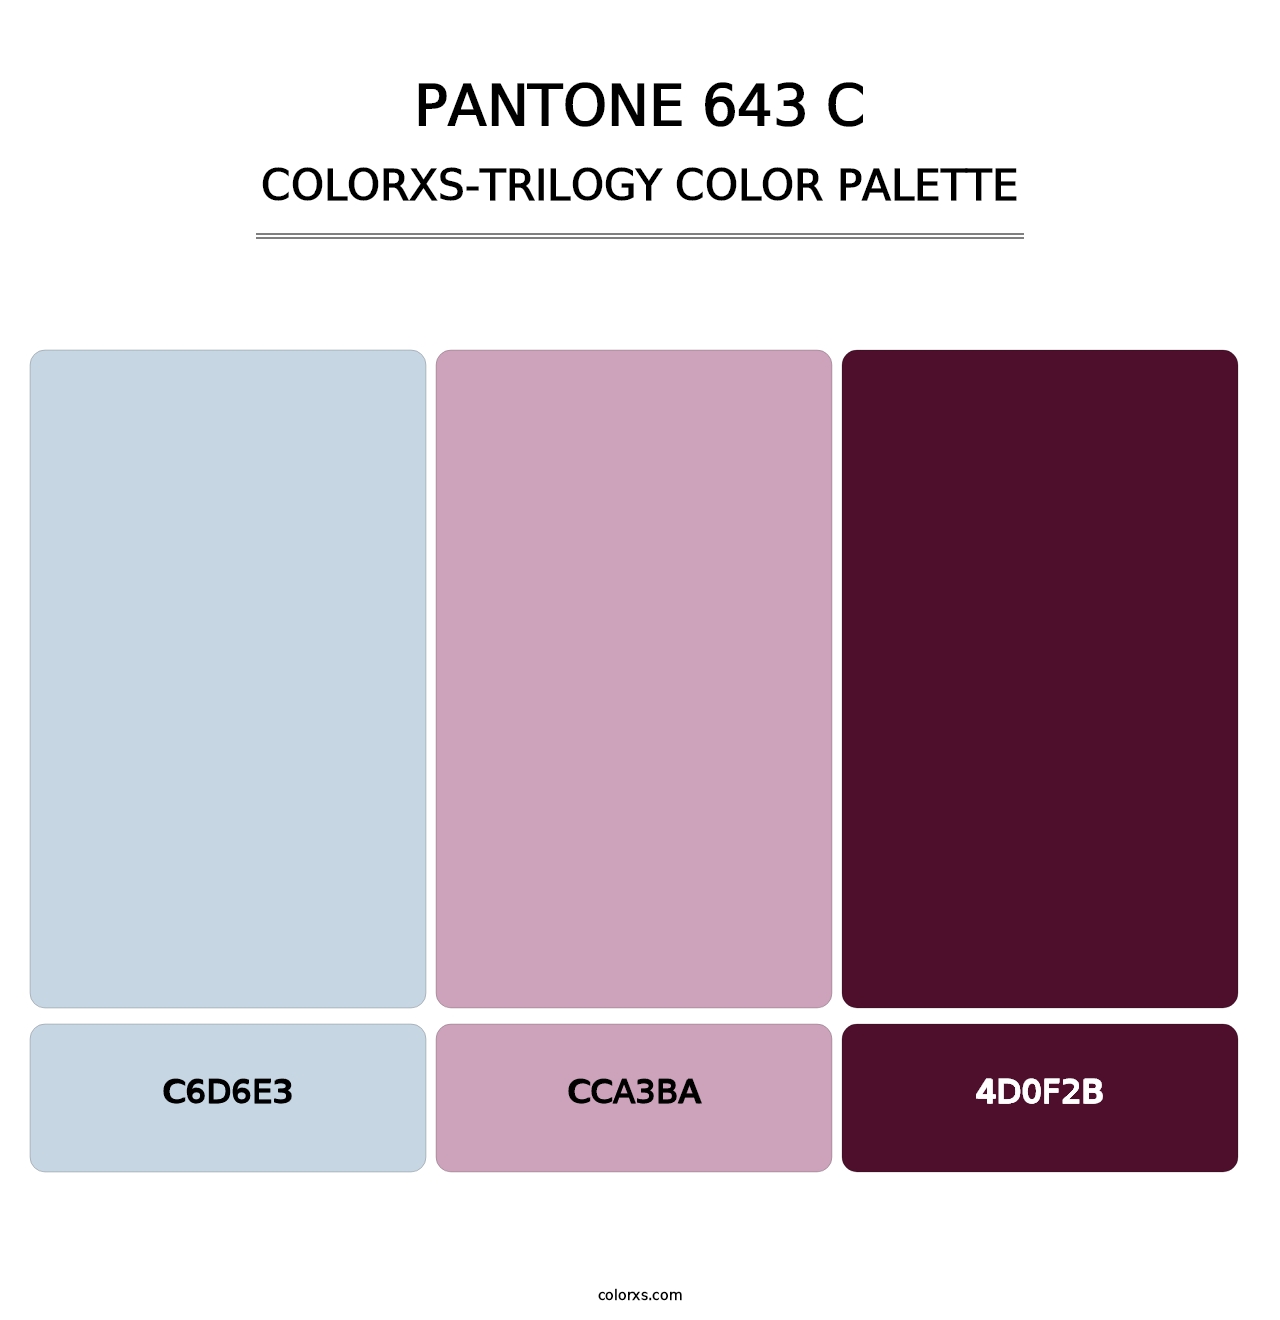 PANTONE 643 C - Colorxs Trilogy Palette